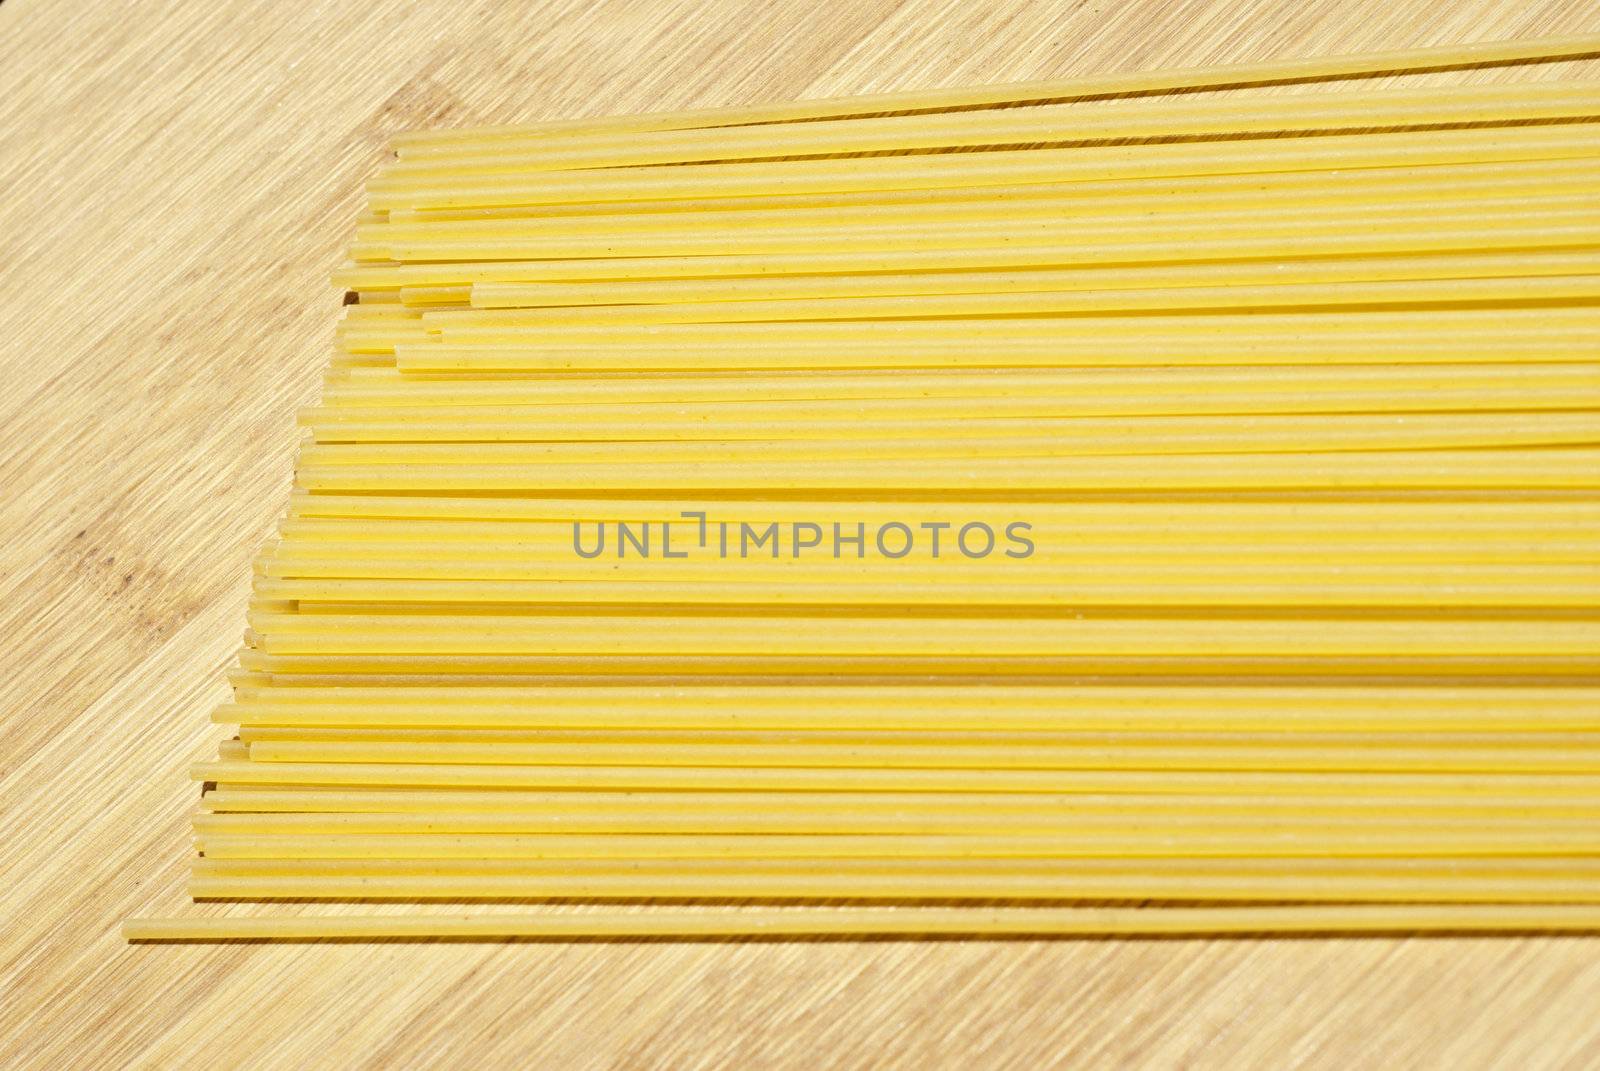 spaghetti on wooden board by gandolfocannatella